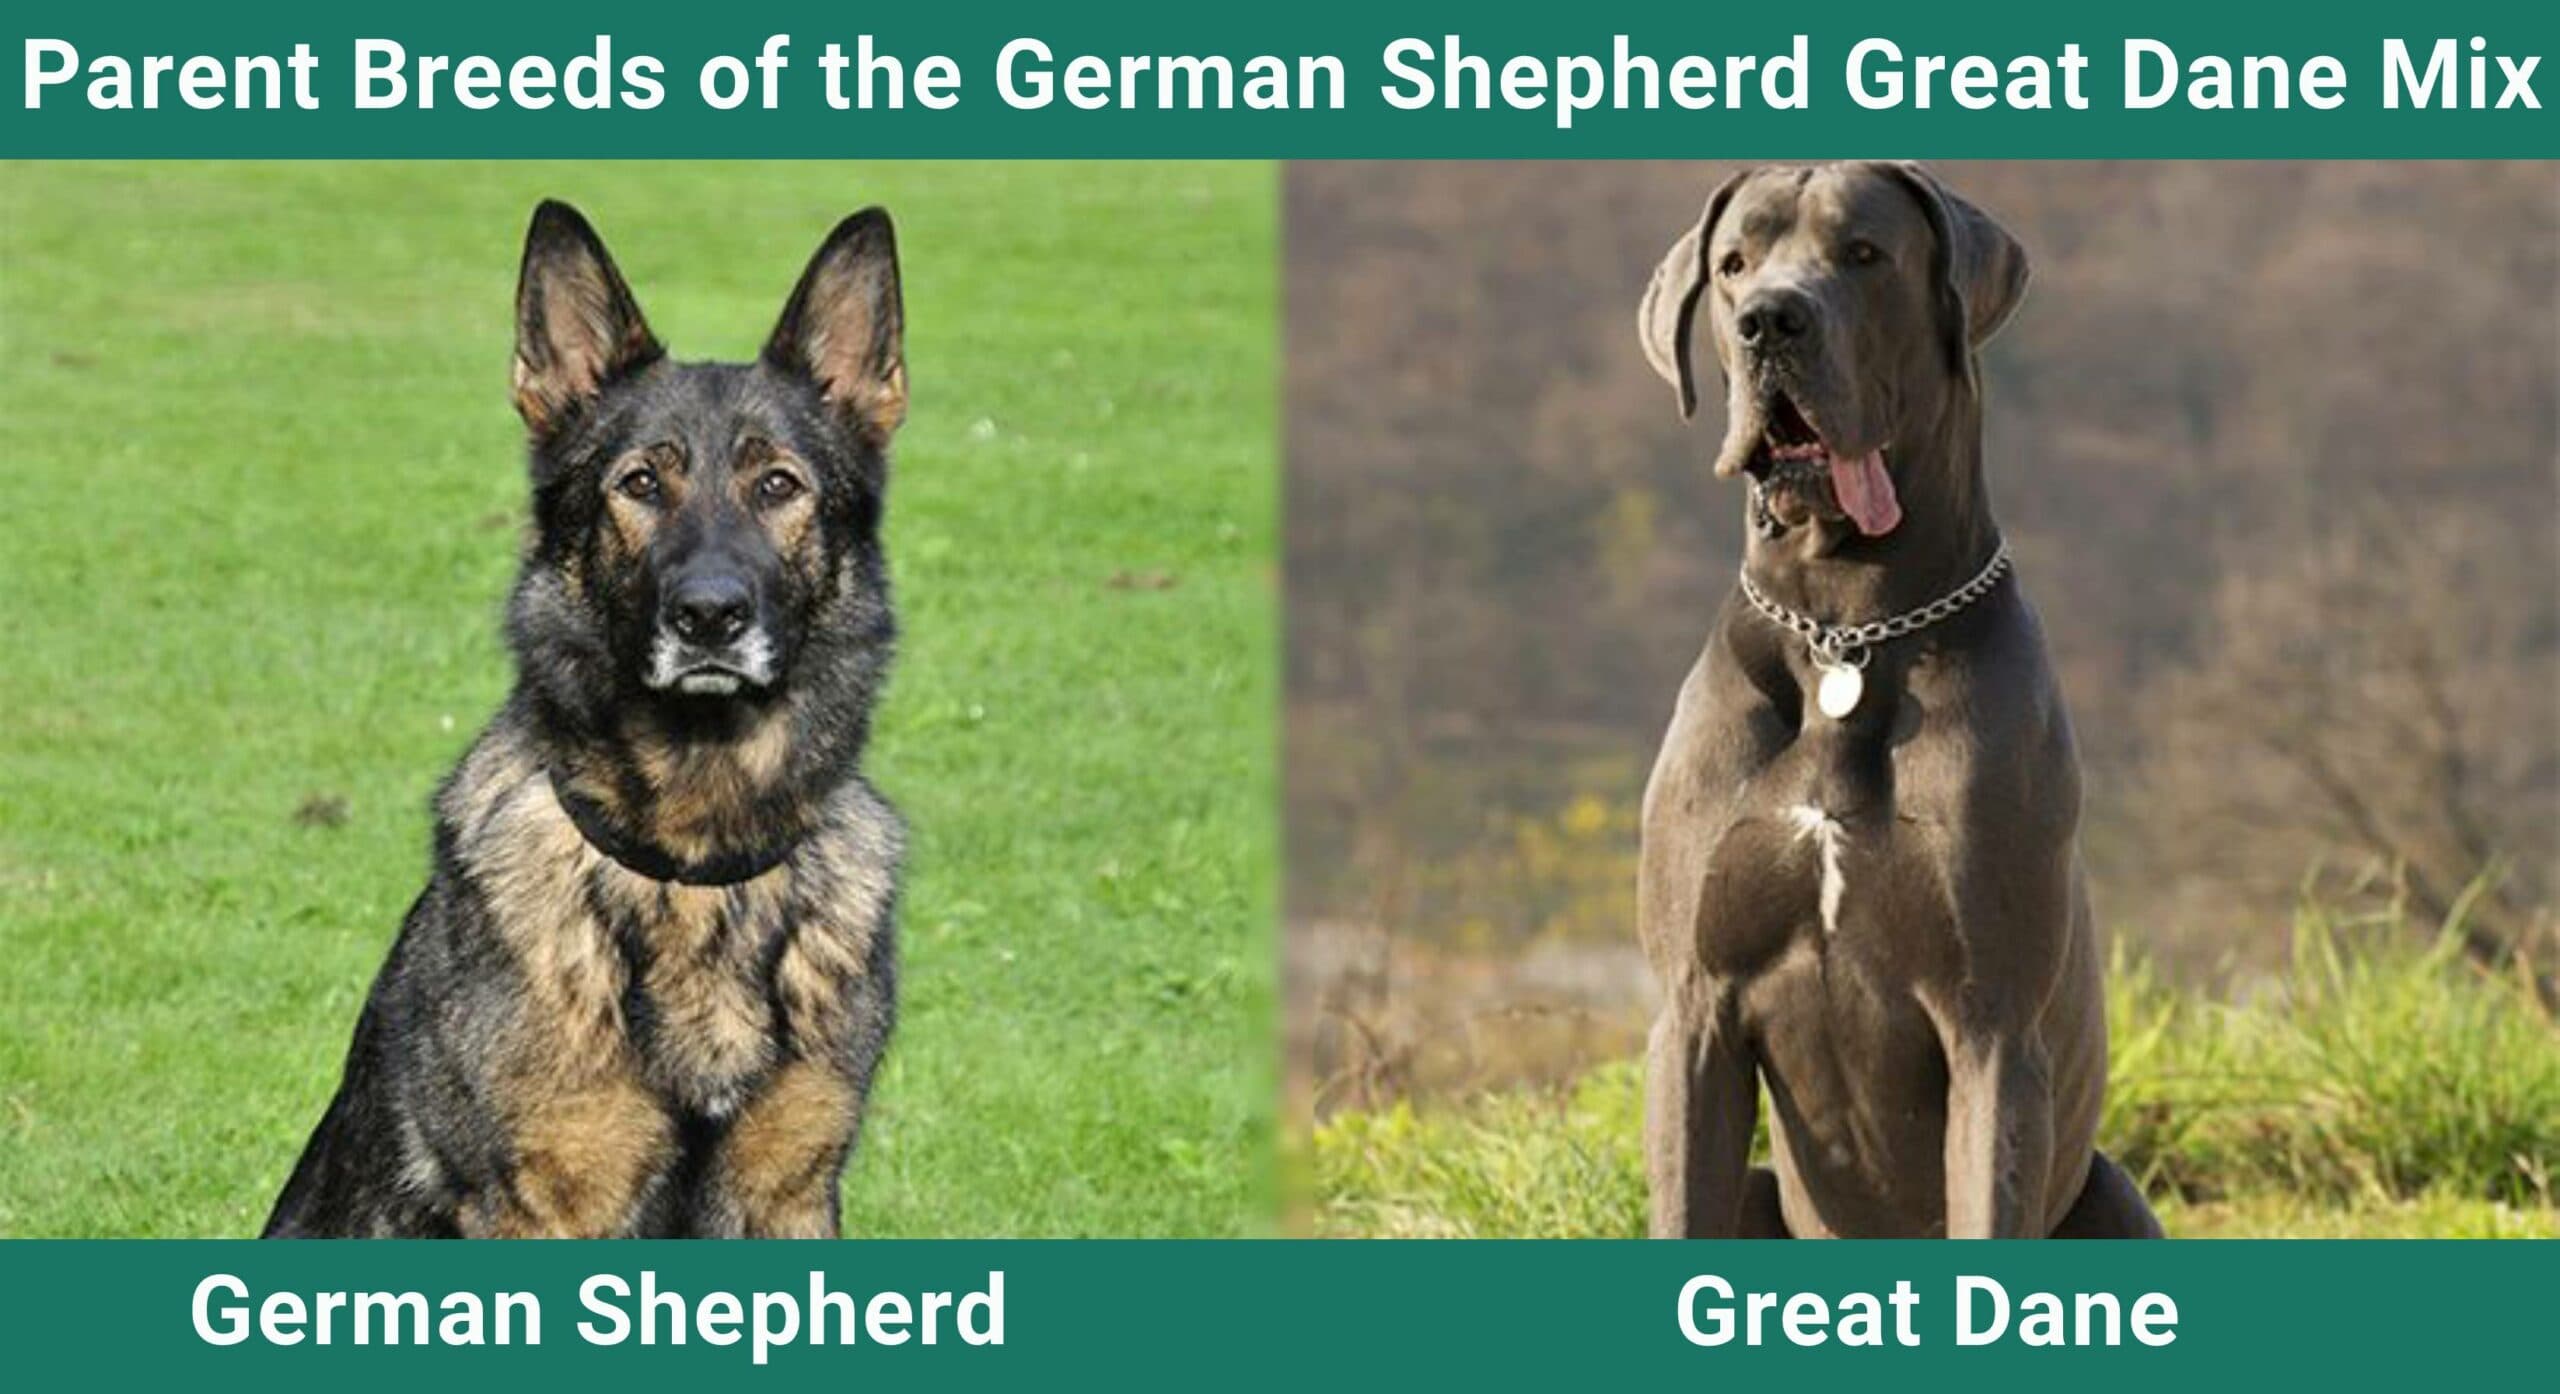 Parent breeds of German Shepherd Great Dane Mix